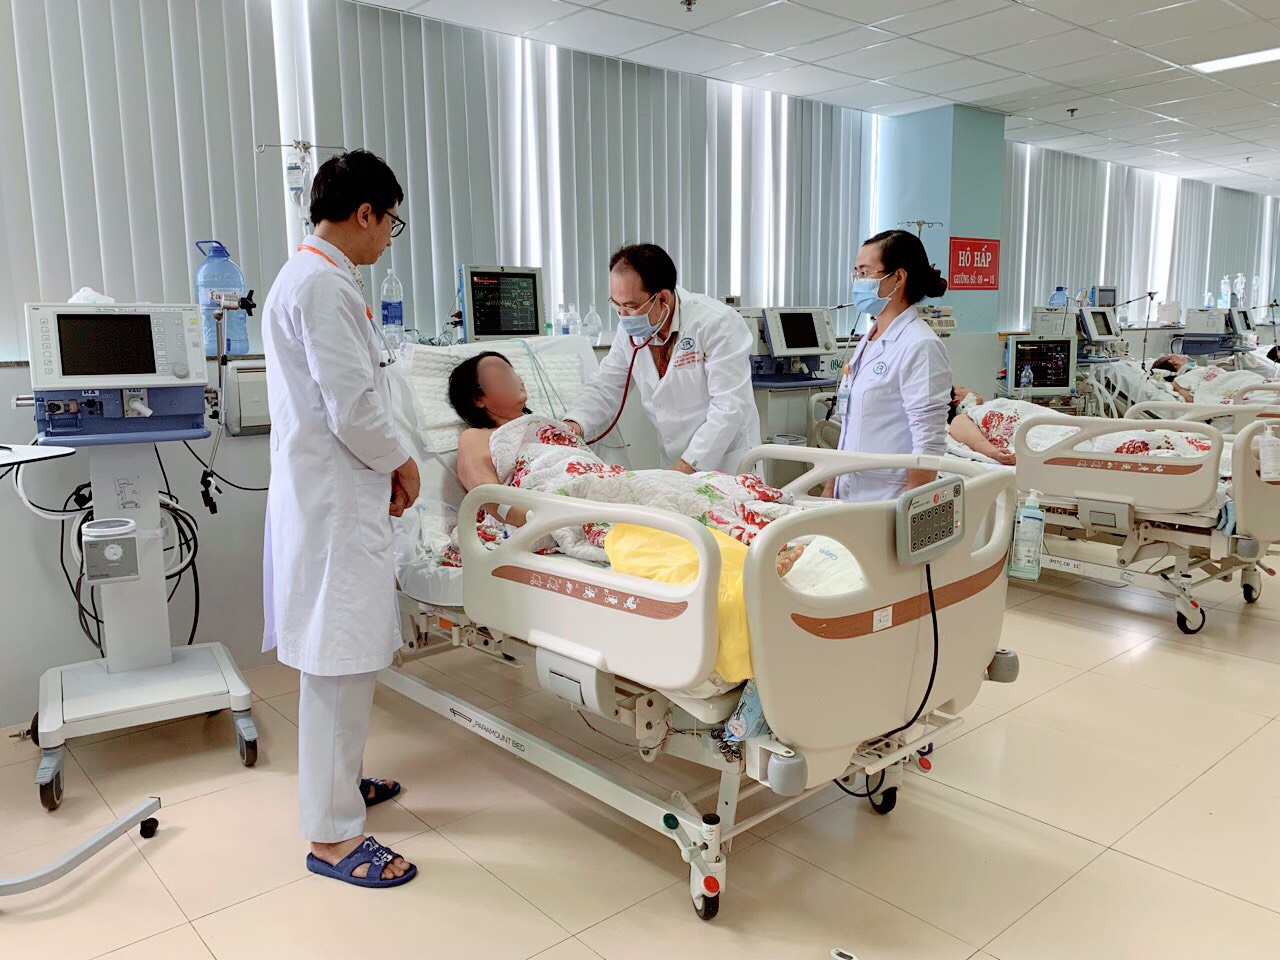 Bệnh viện Bà Rịa cứu sống bệnh nhân ngưng tim 4 lần | Bệnh viện Bà Rịa